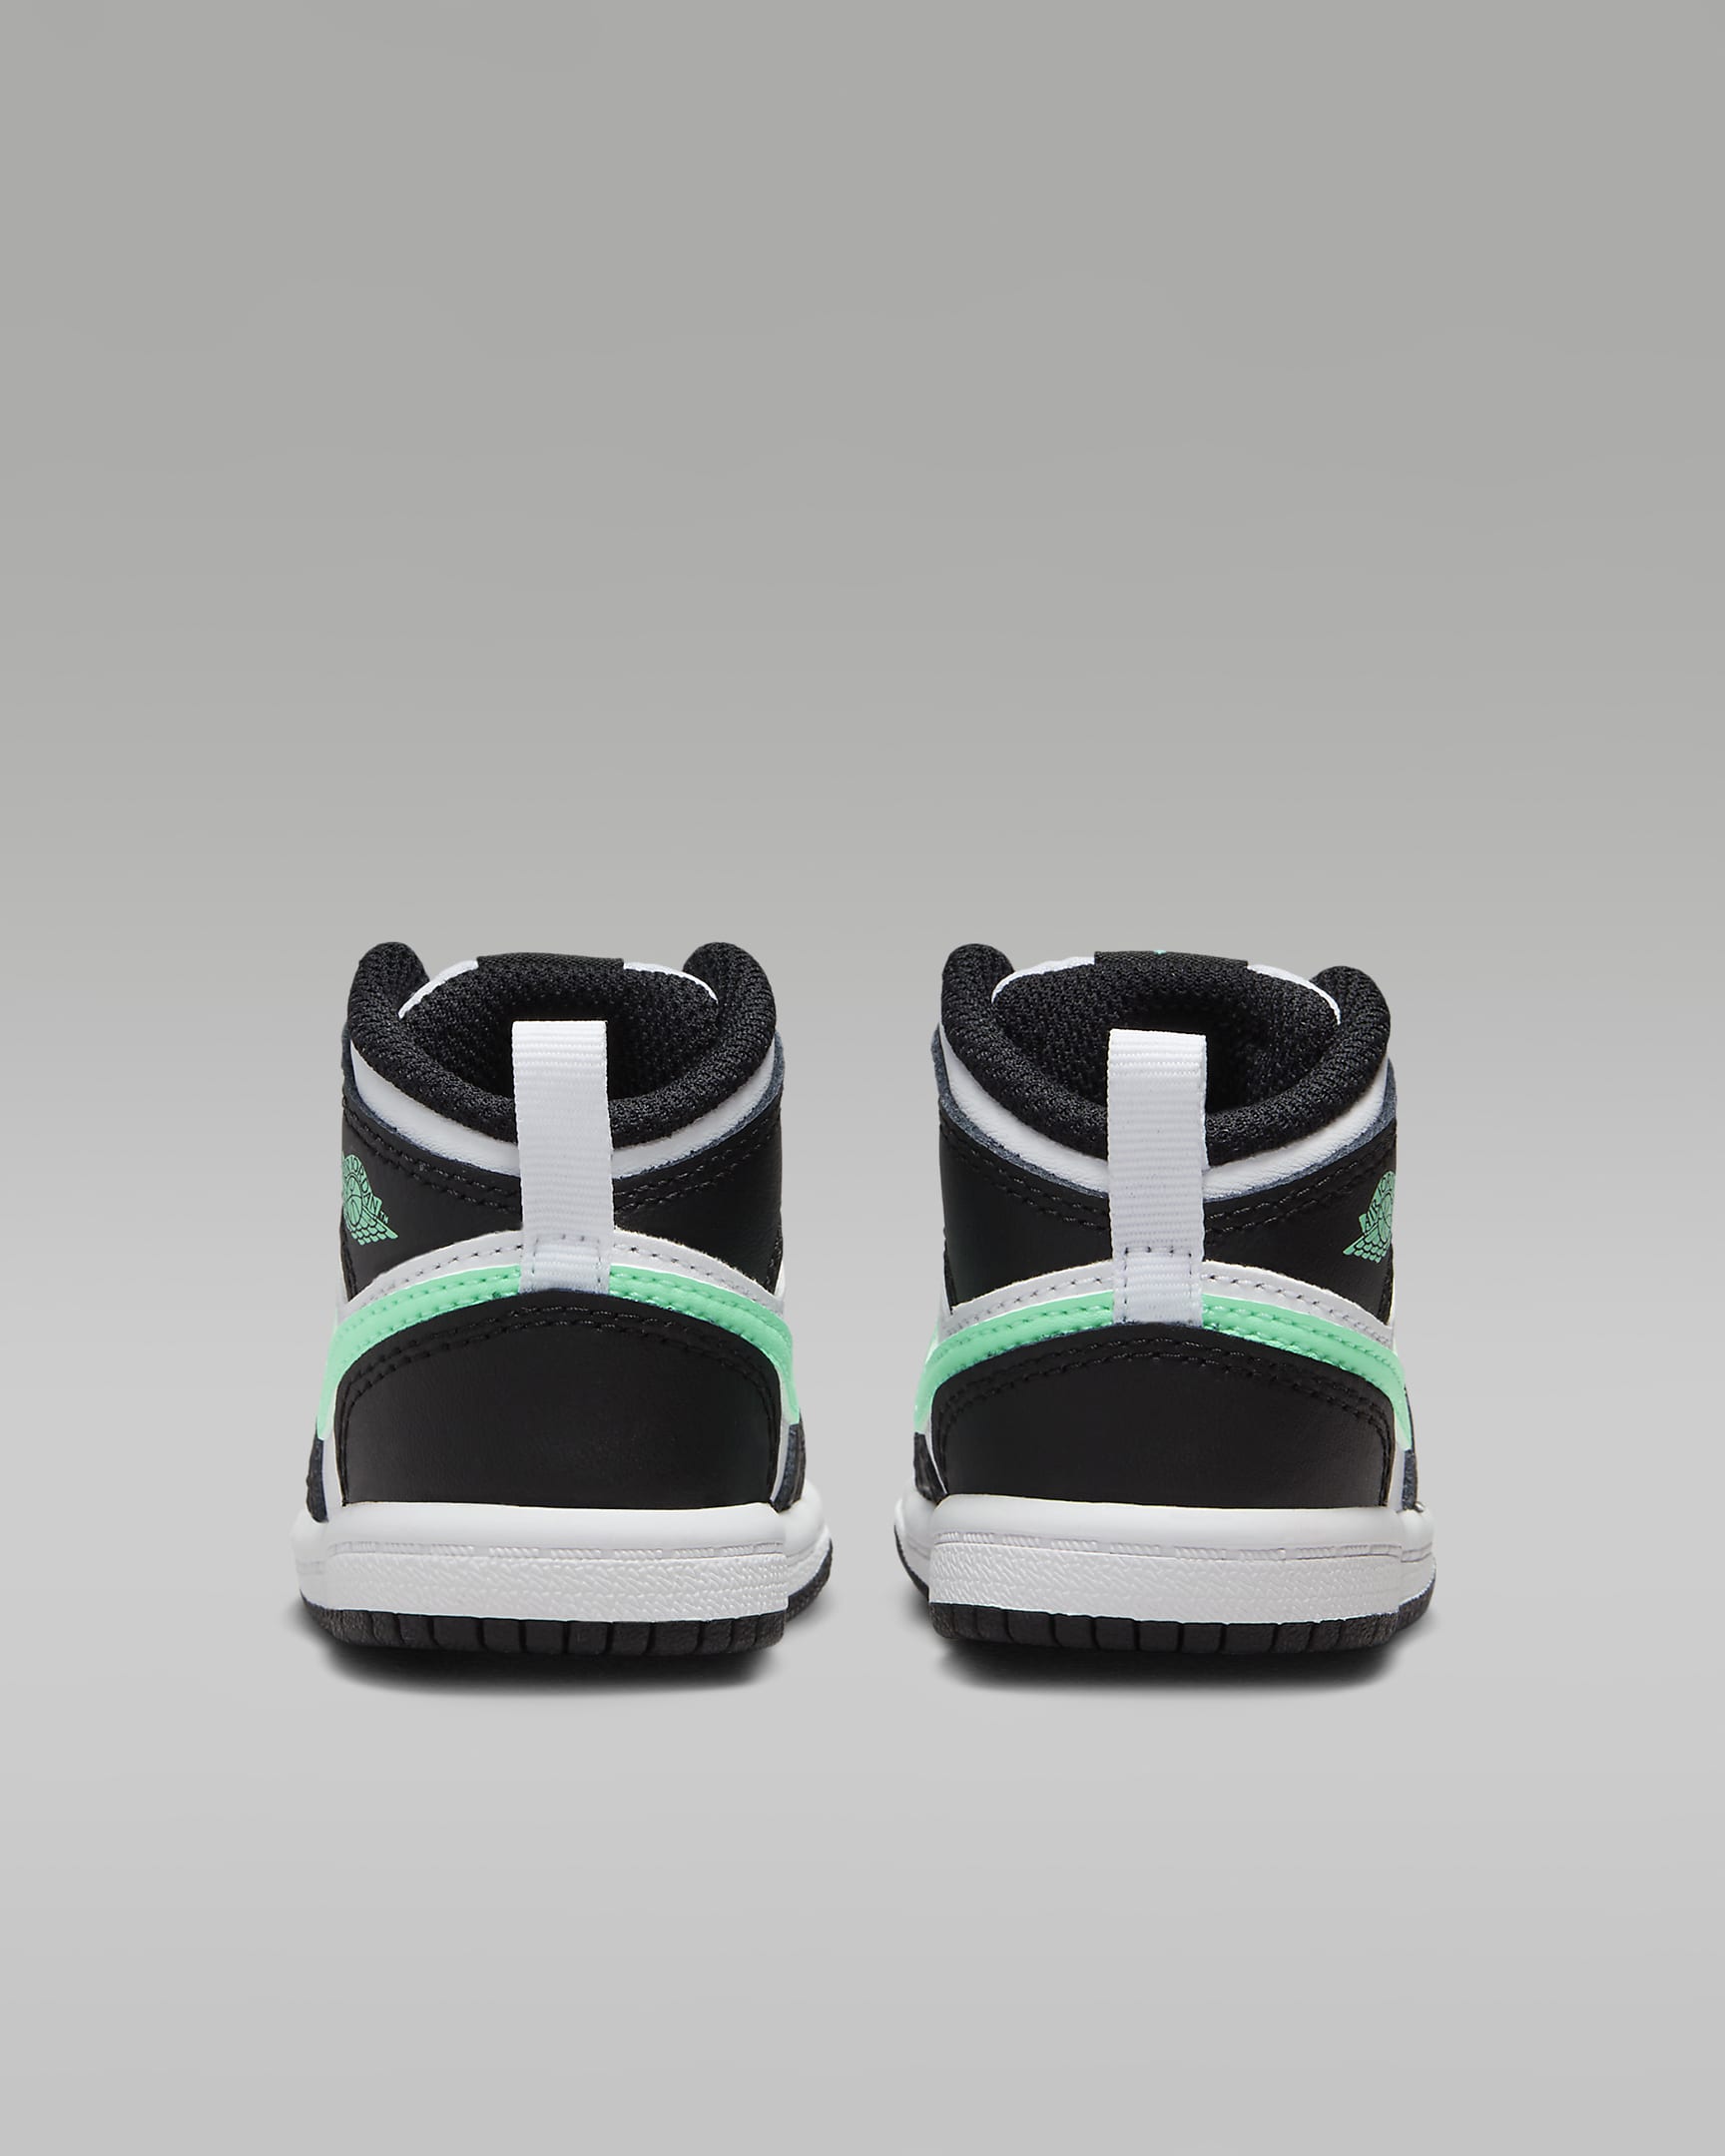 Jordan 1 Mid Baby/Toddler Shoes - White/Black/Green Glow